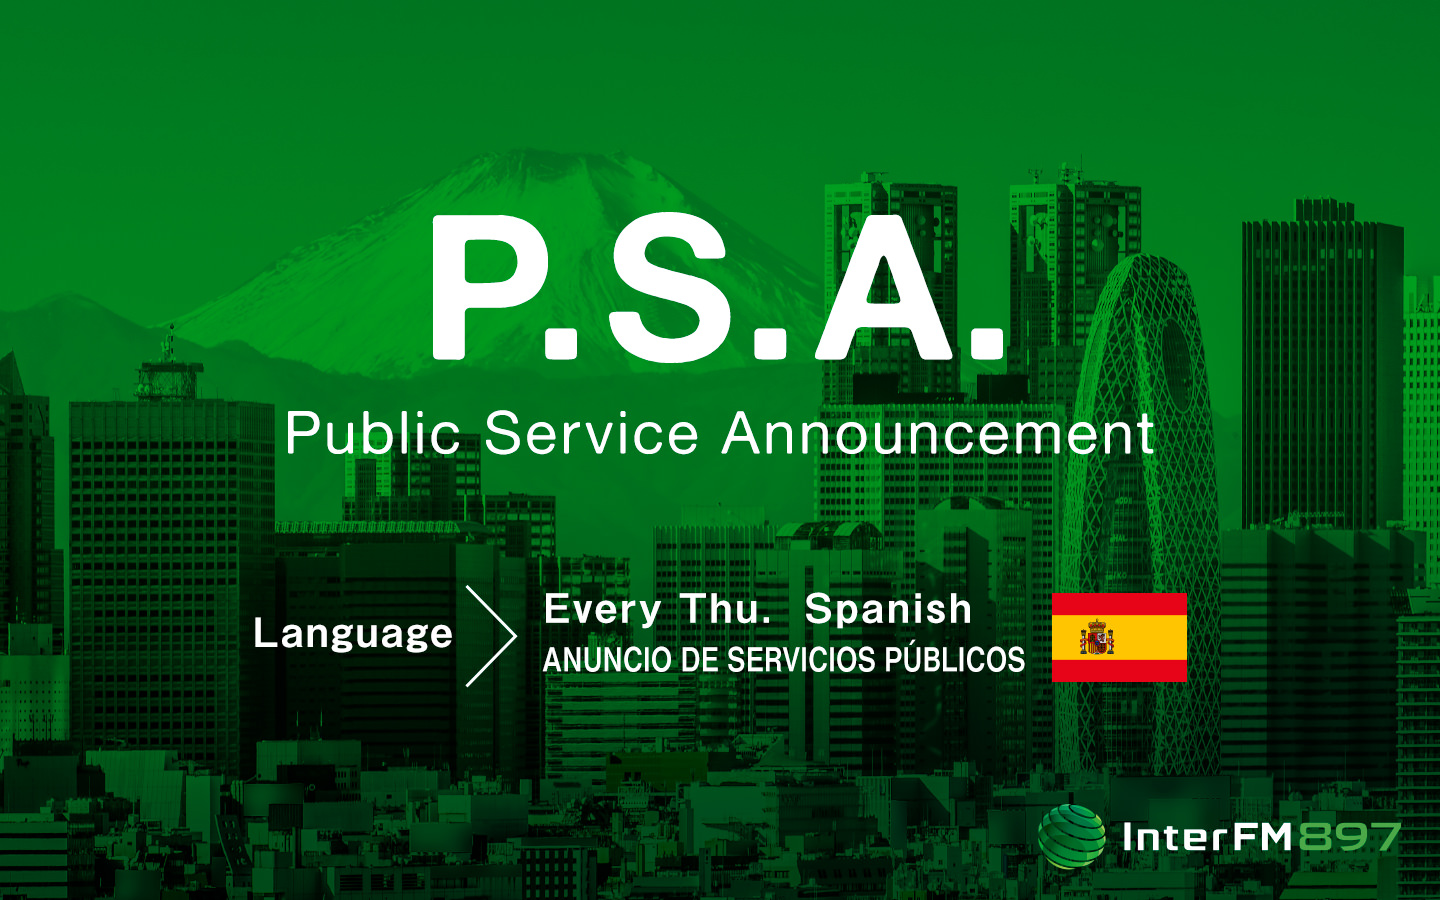 Anuncio de servicios publicos - Public Service Announcement (Español - Spanish)